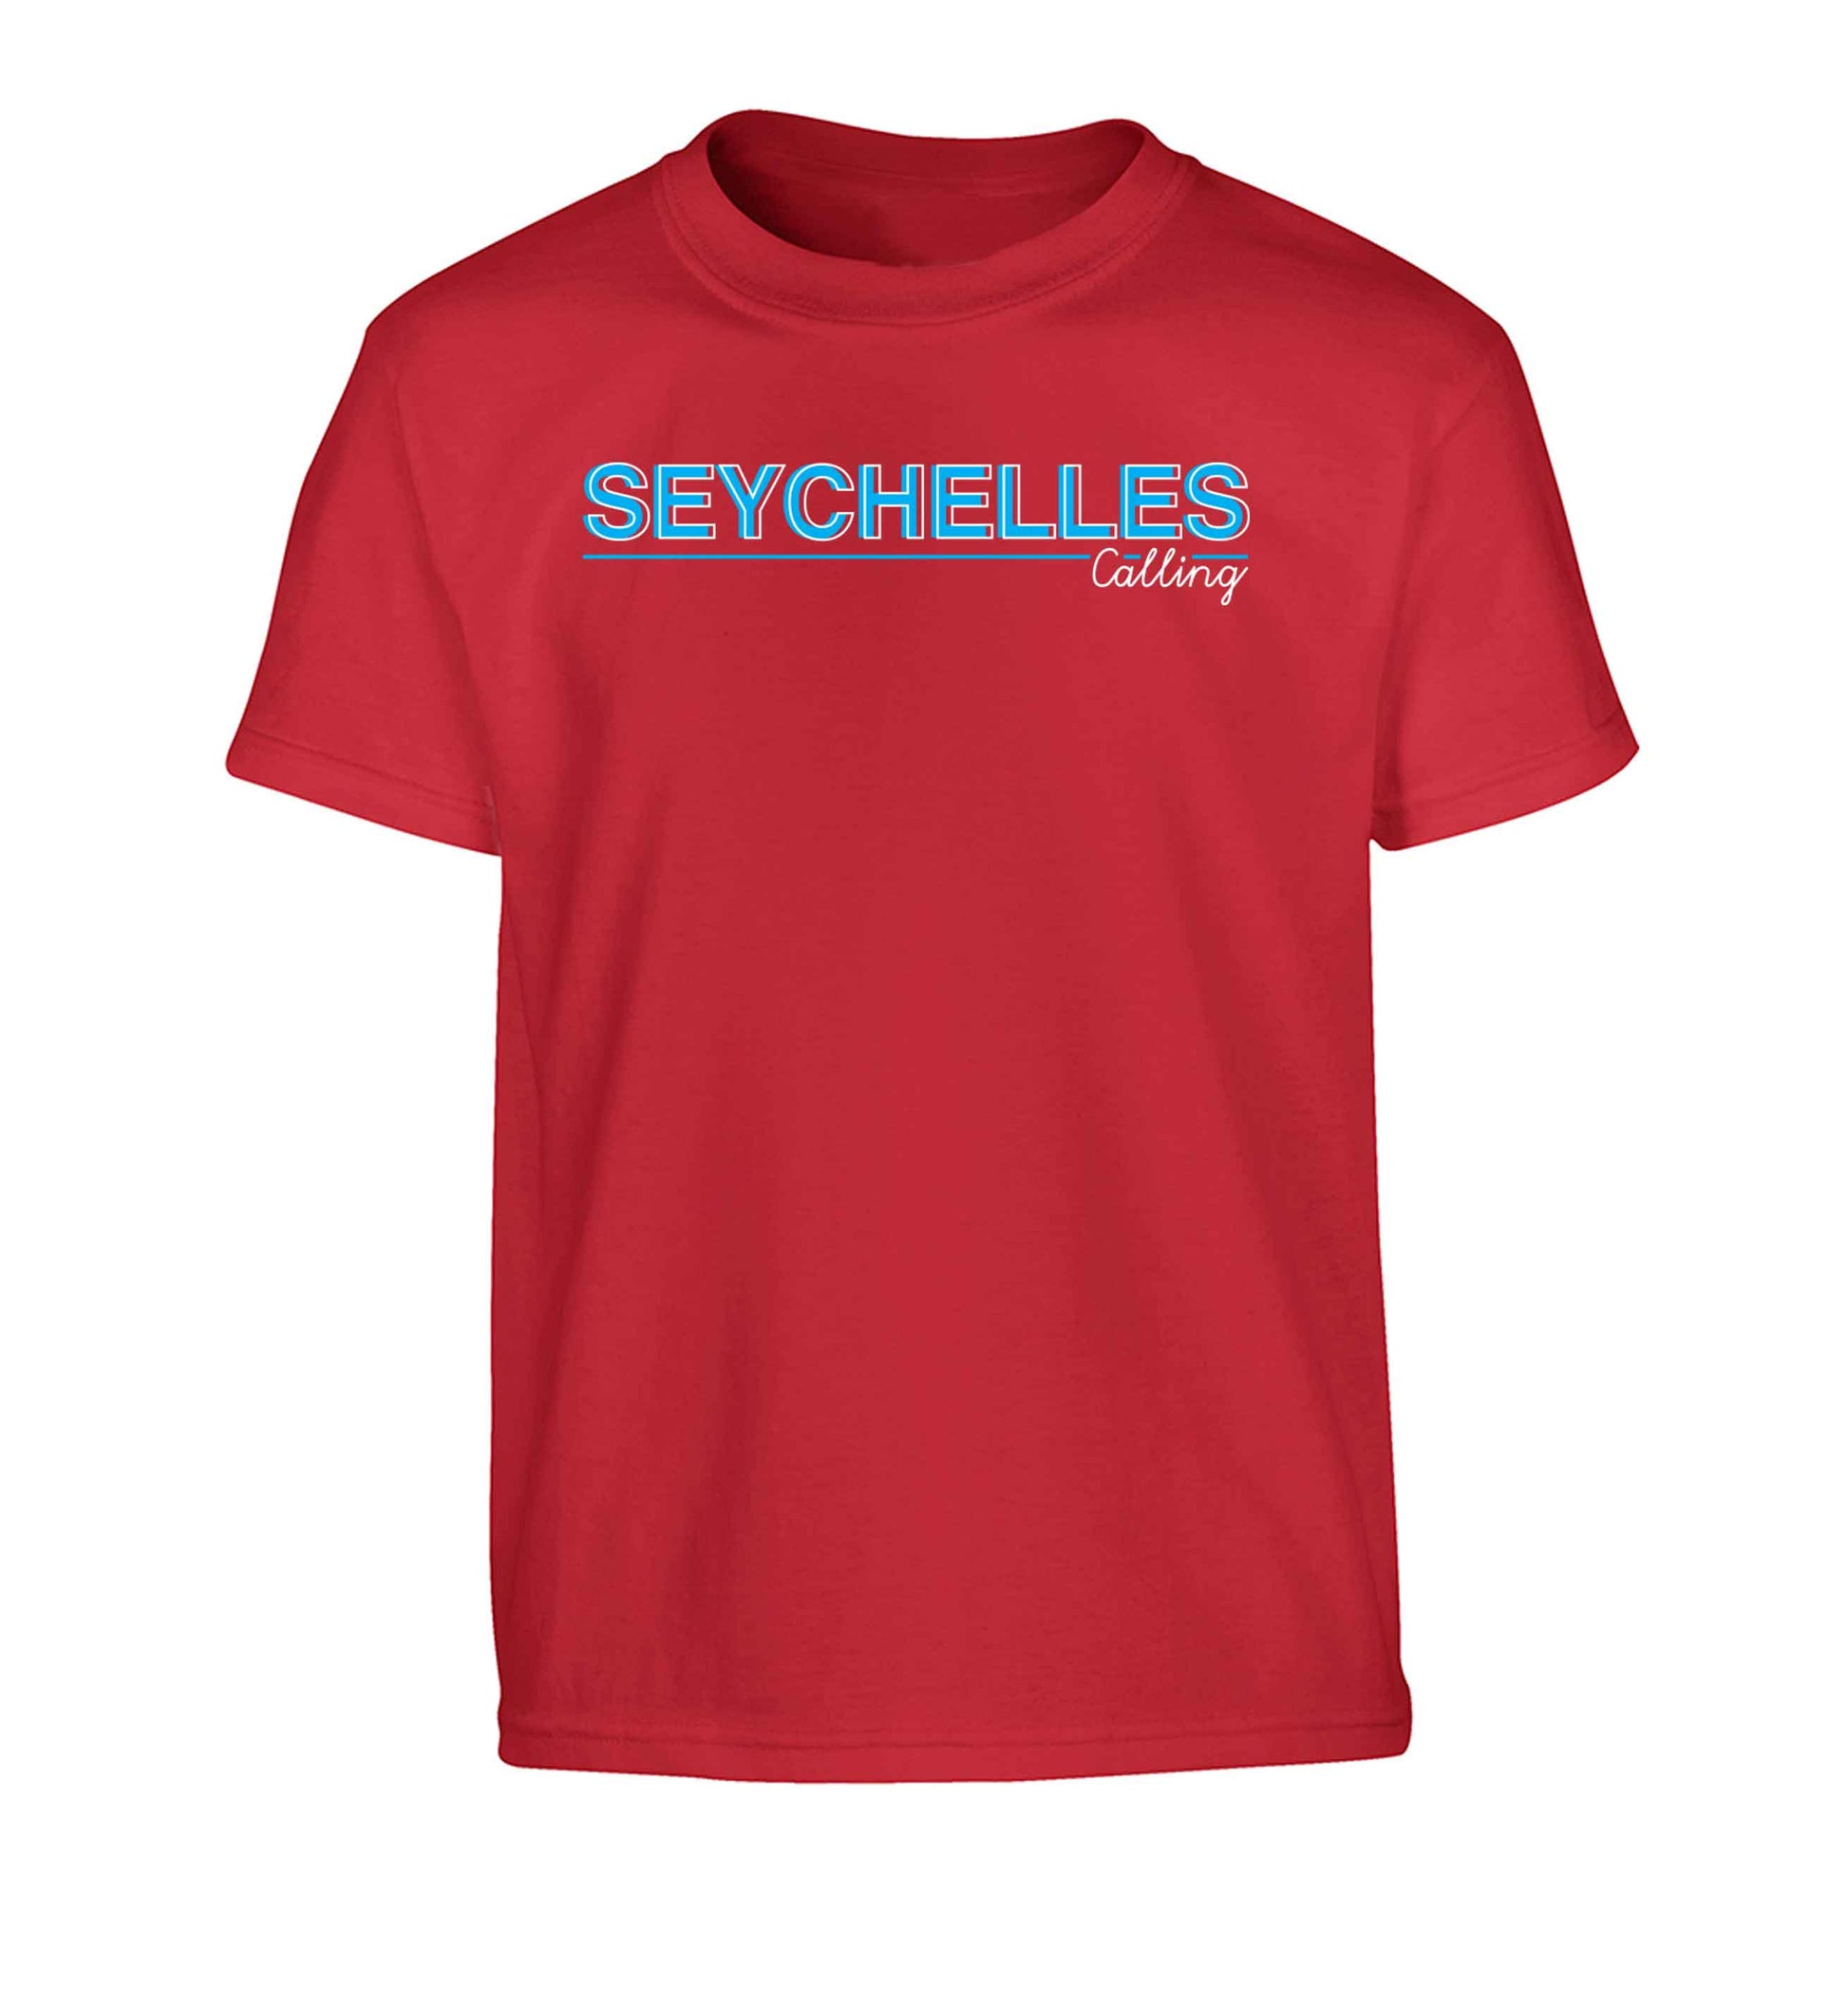 Seychelles calling Children's red Tshirt 12-13 Years